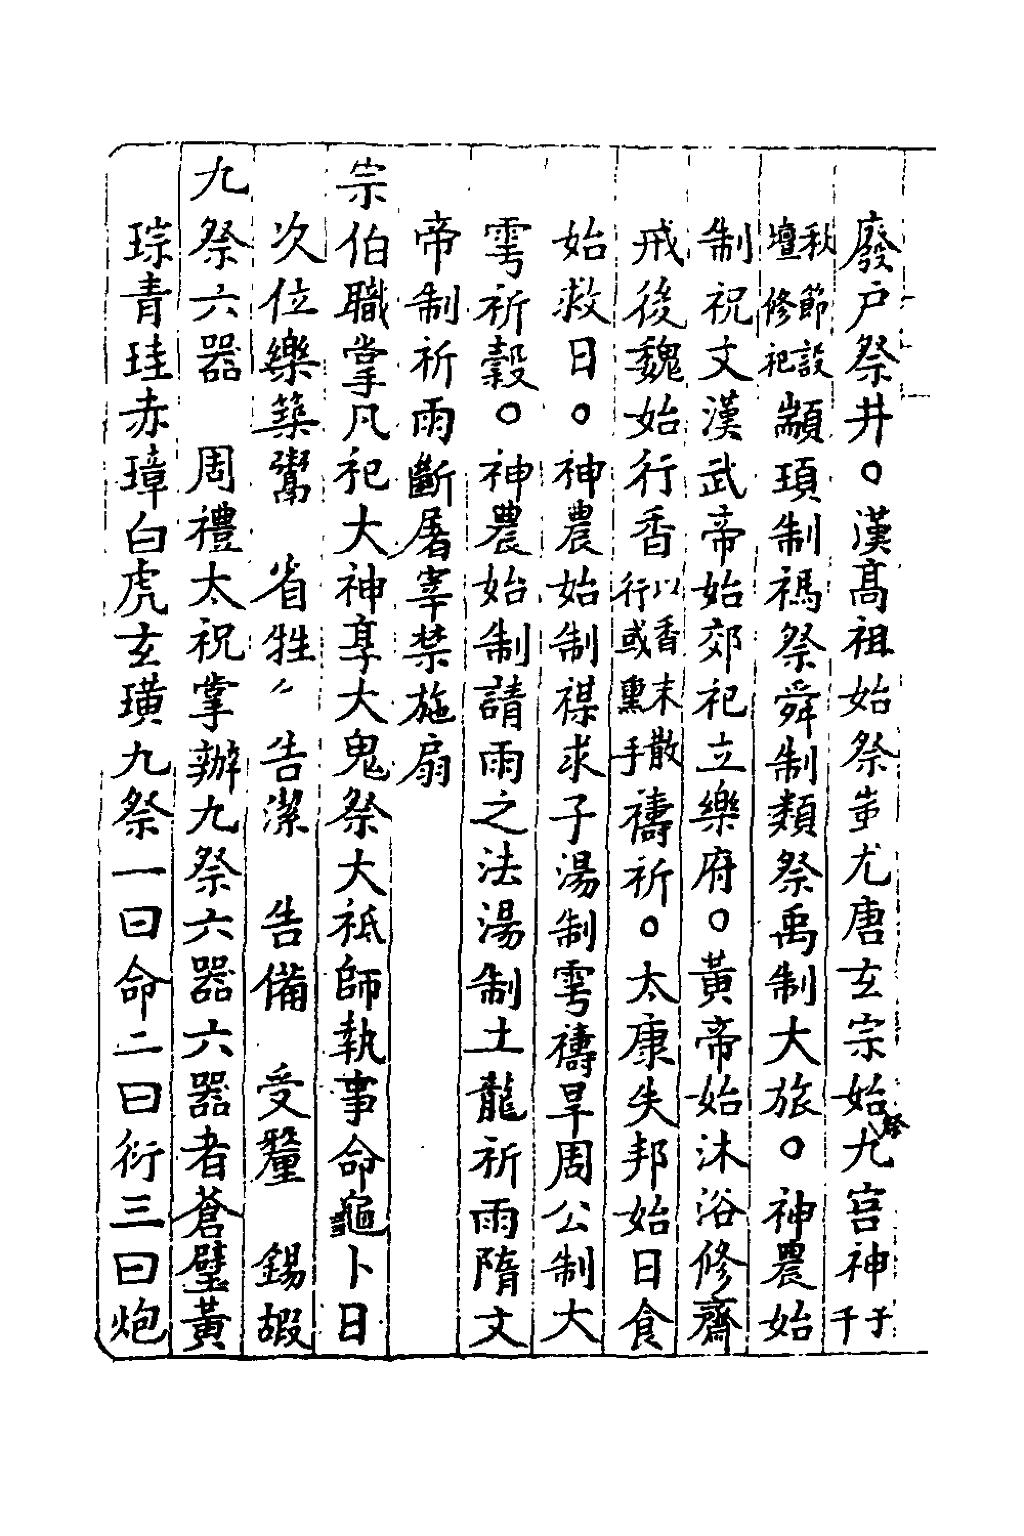 Page Ye Hang Chuan Part 7 Djvu 33 维基文库 自由的图书馆